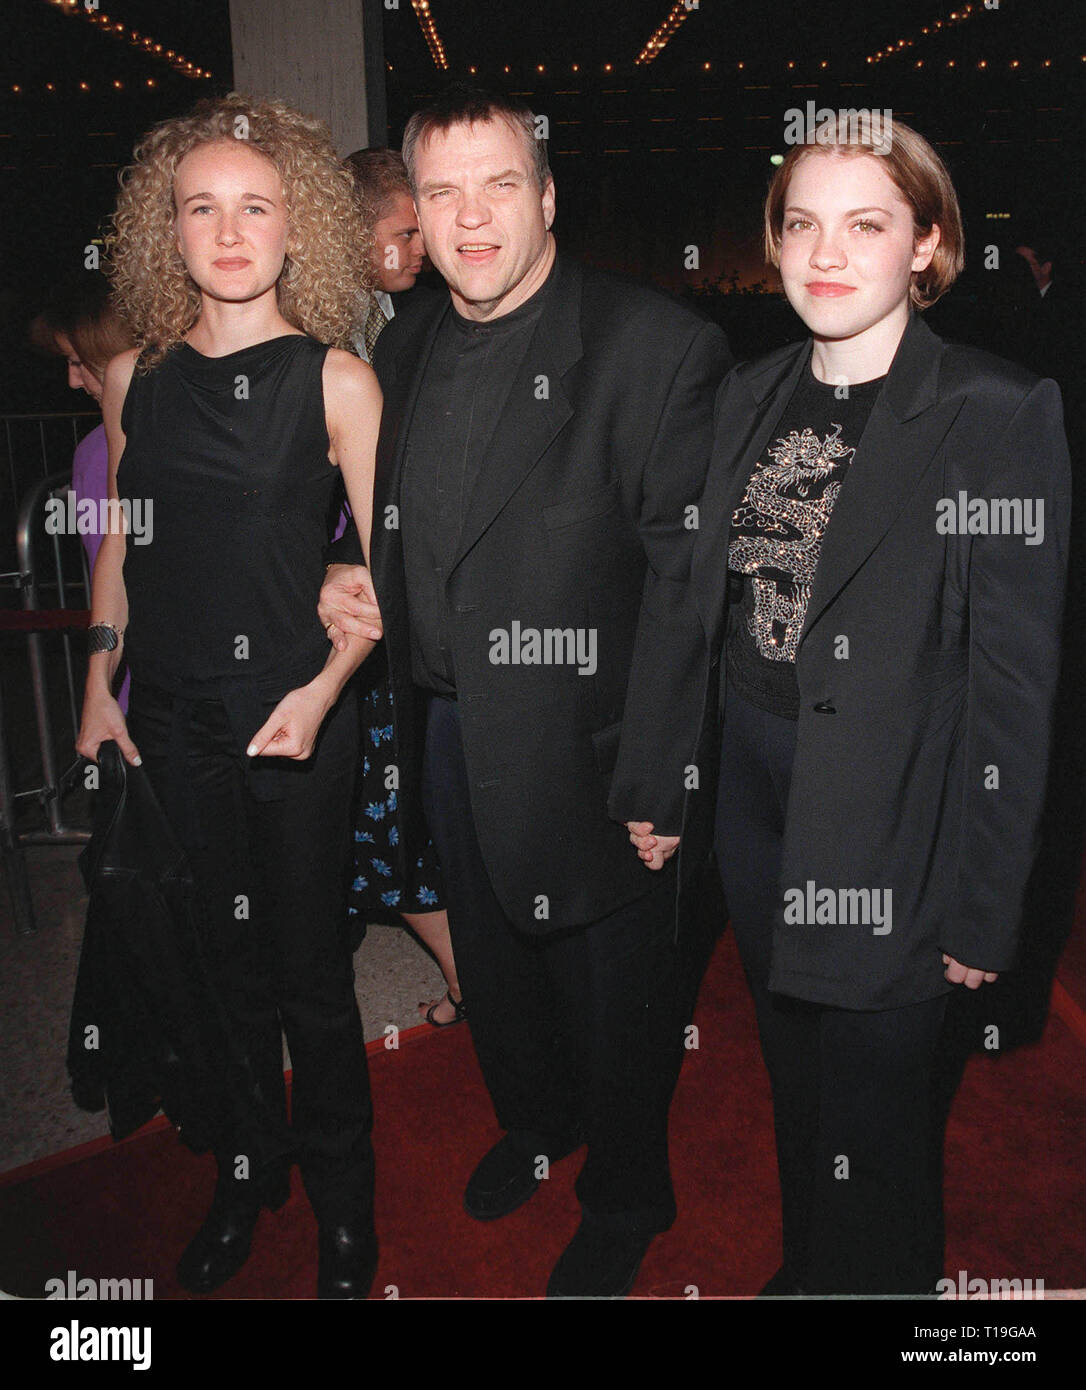 LOS ANGELES, Ca - 8. Oktober 1998: Sänger/Schauspieler Meat Loaf & Töchter PEARL (links) & AMANDA am Los Angeles Premiere seines neuen Films "Der Mächtige", in dem er Sterne mit Sharon Stone & Gillian Anderson. Stockfoto